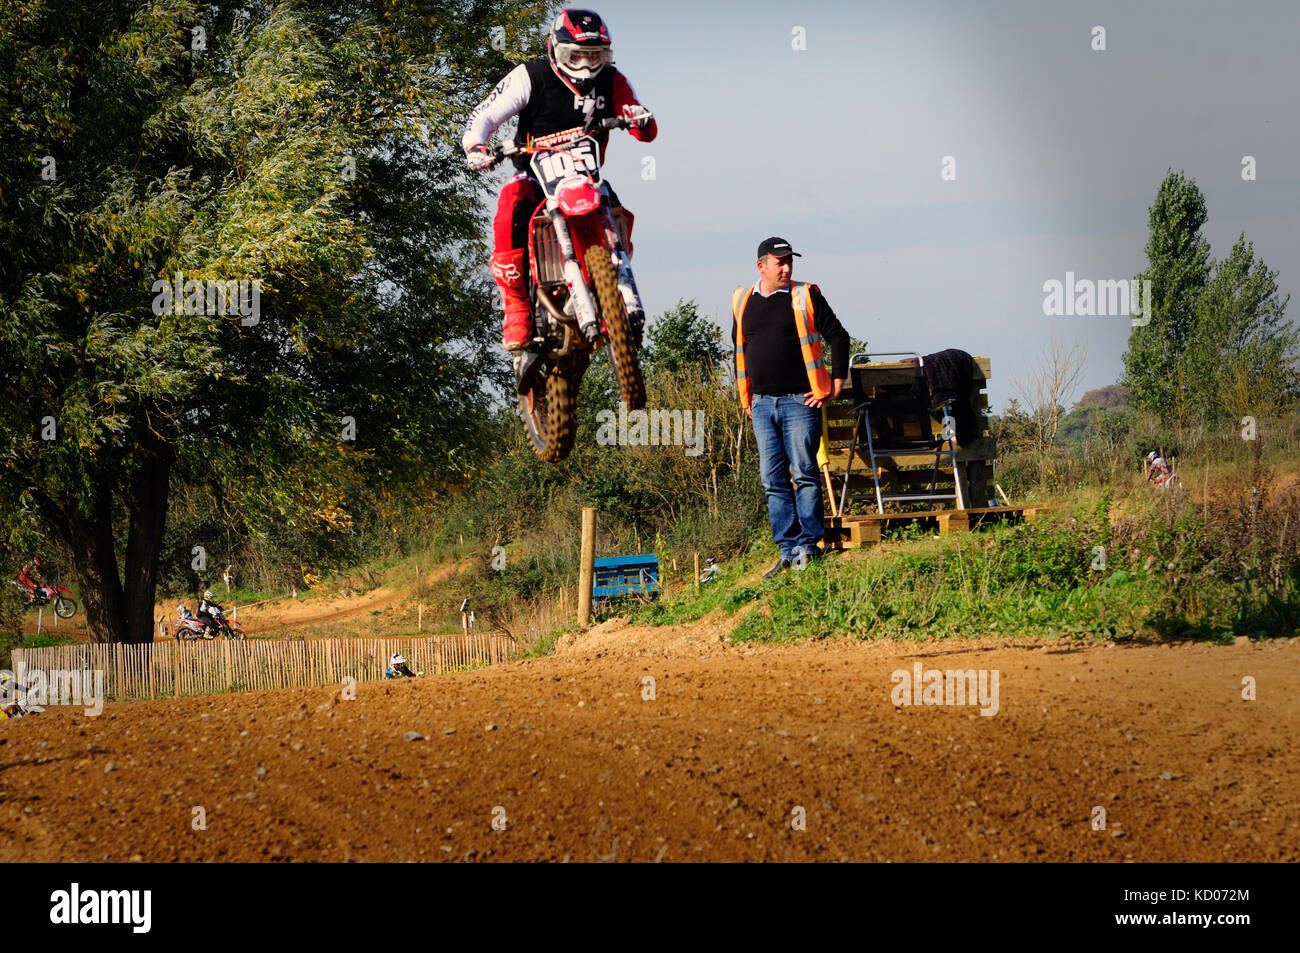 Motocross en action Banque D'Images